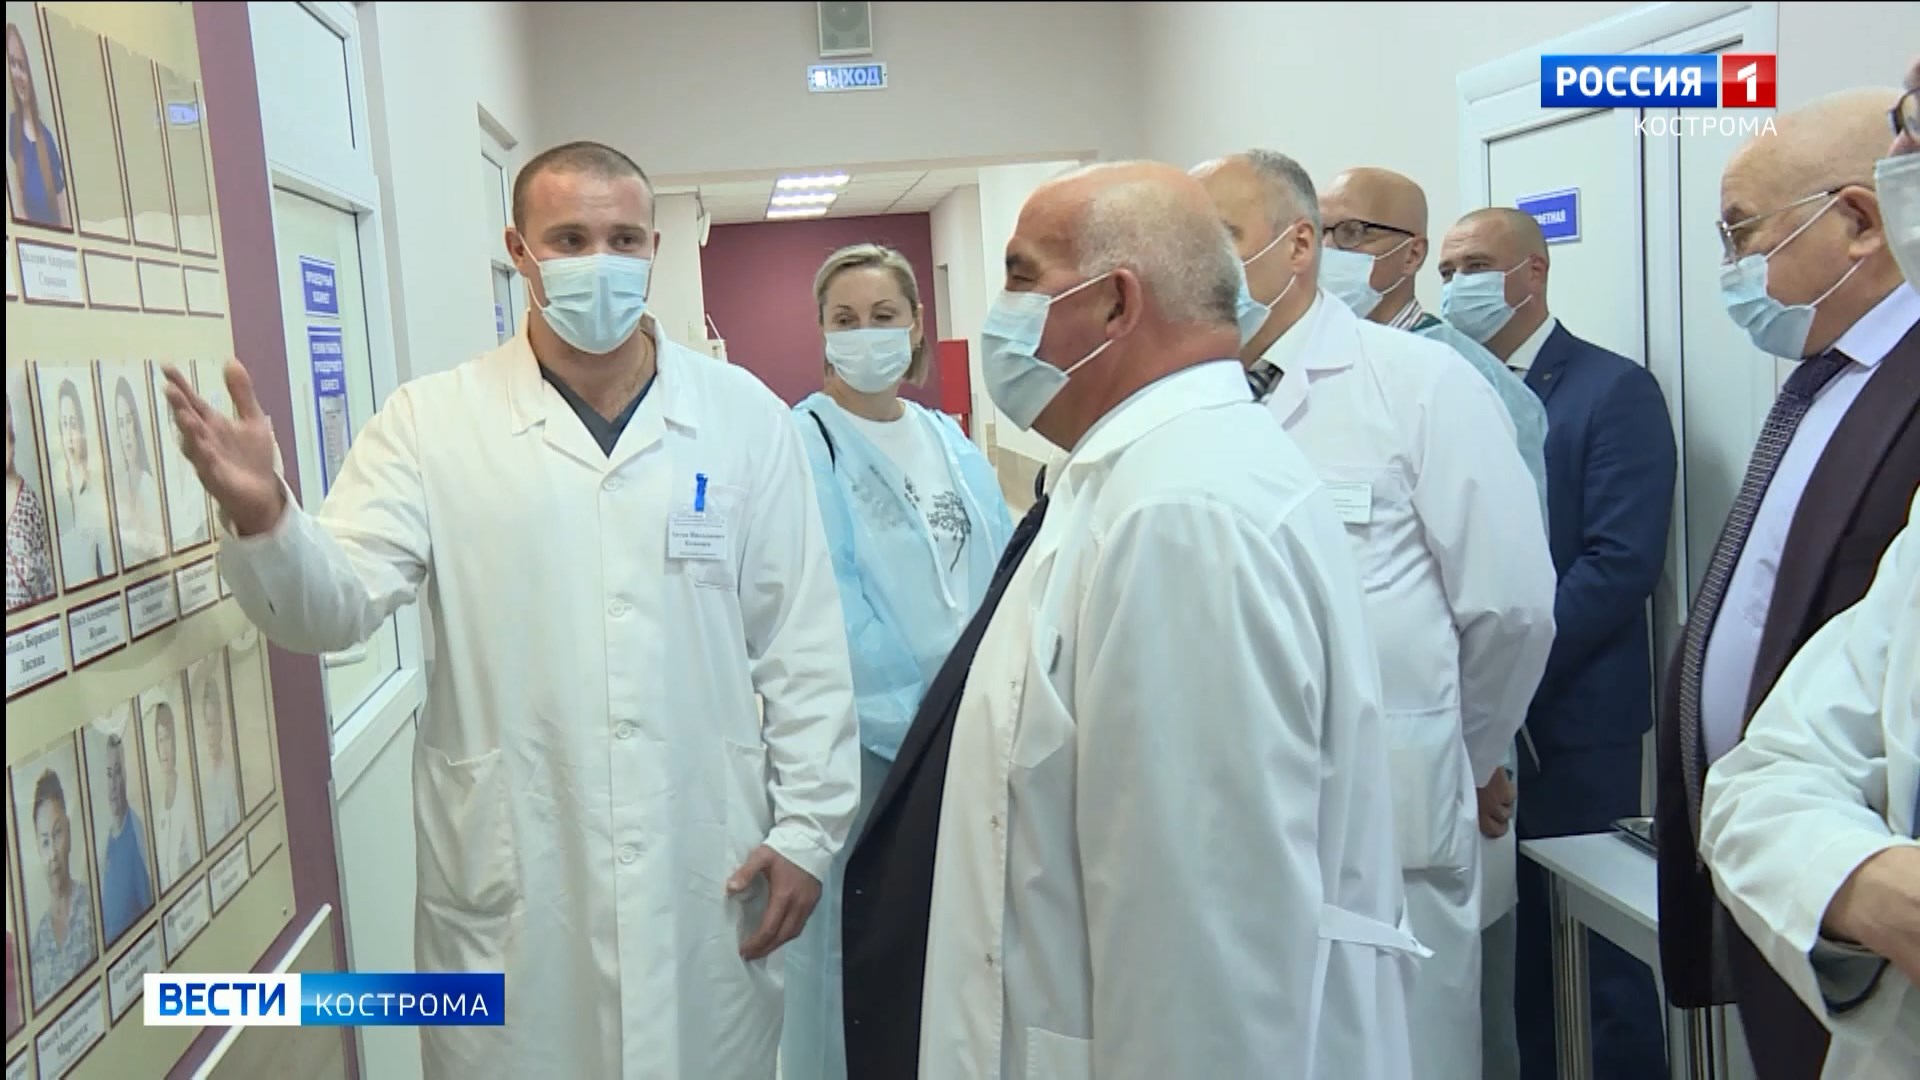 Инновационные методики молодых врачей высоко оценил костромской губернатор